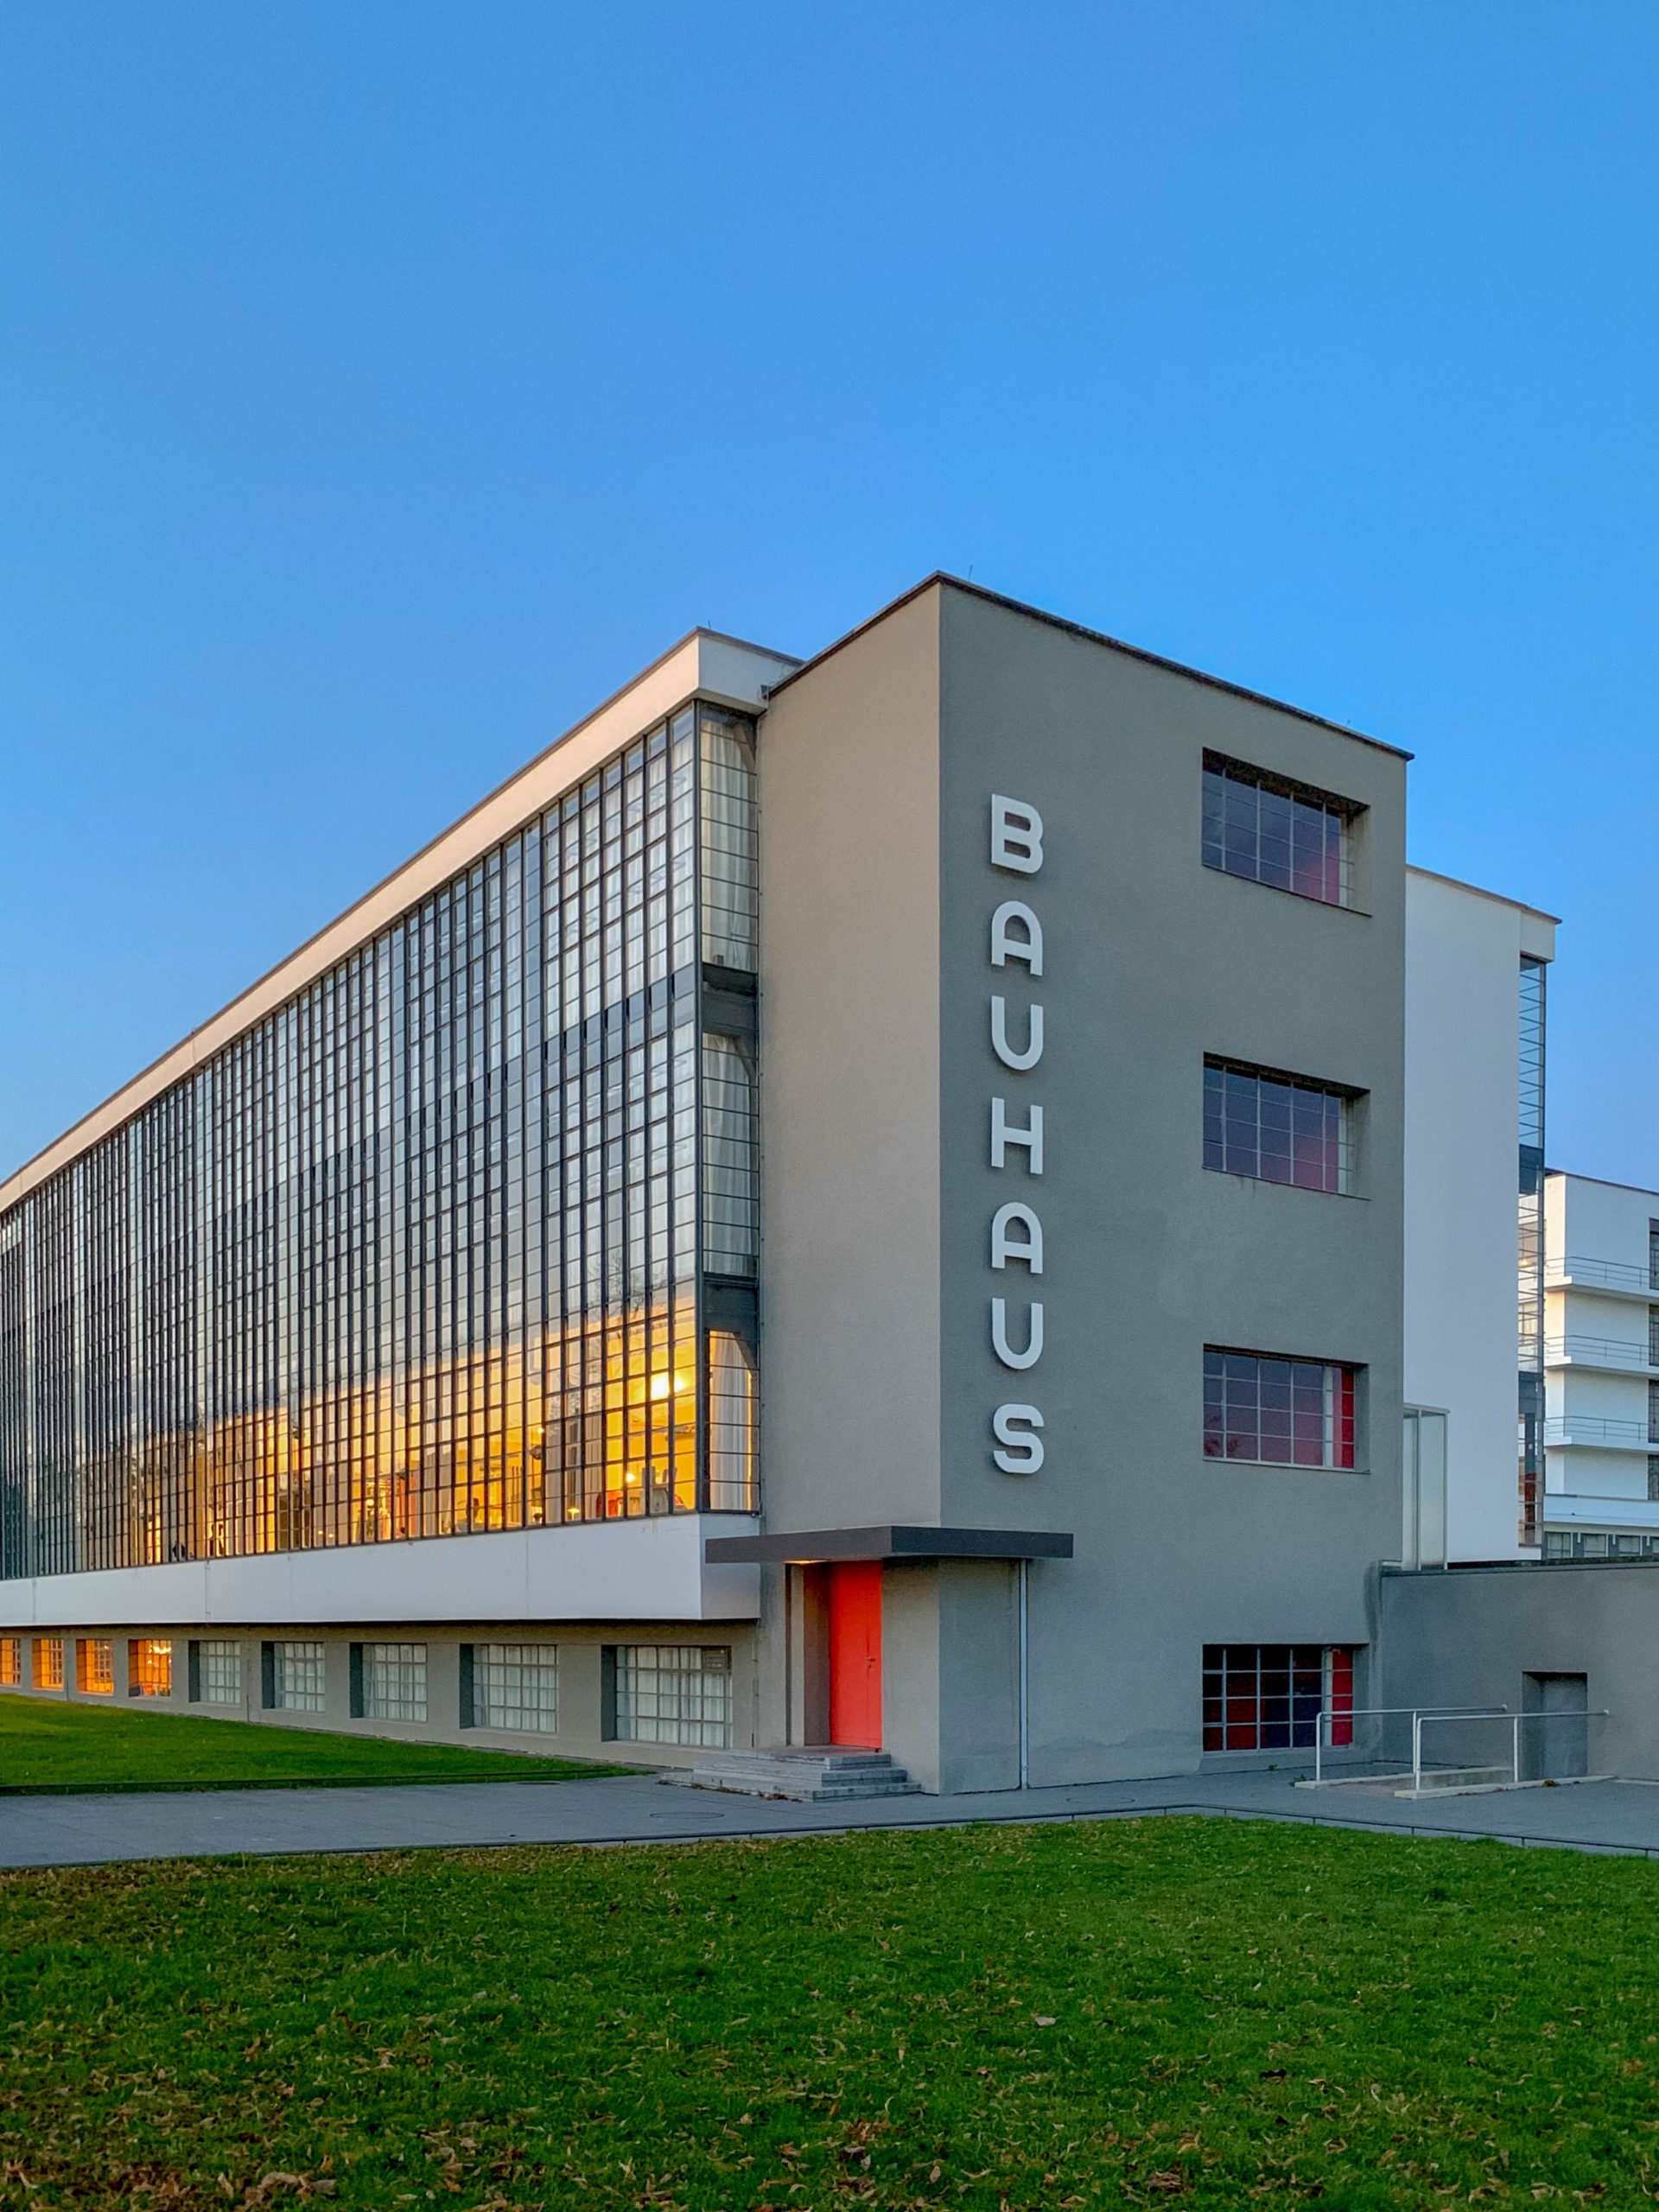 Bauhausgebäude, 1925-1926. Architekt: Walter Gropius